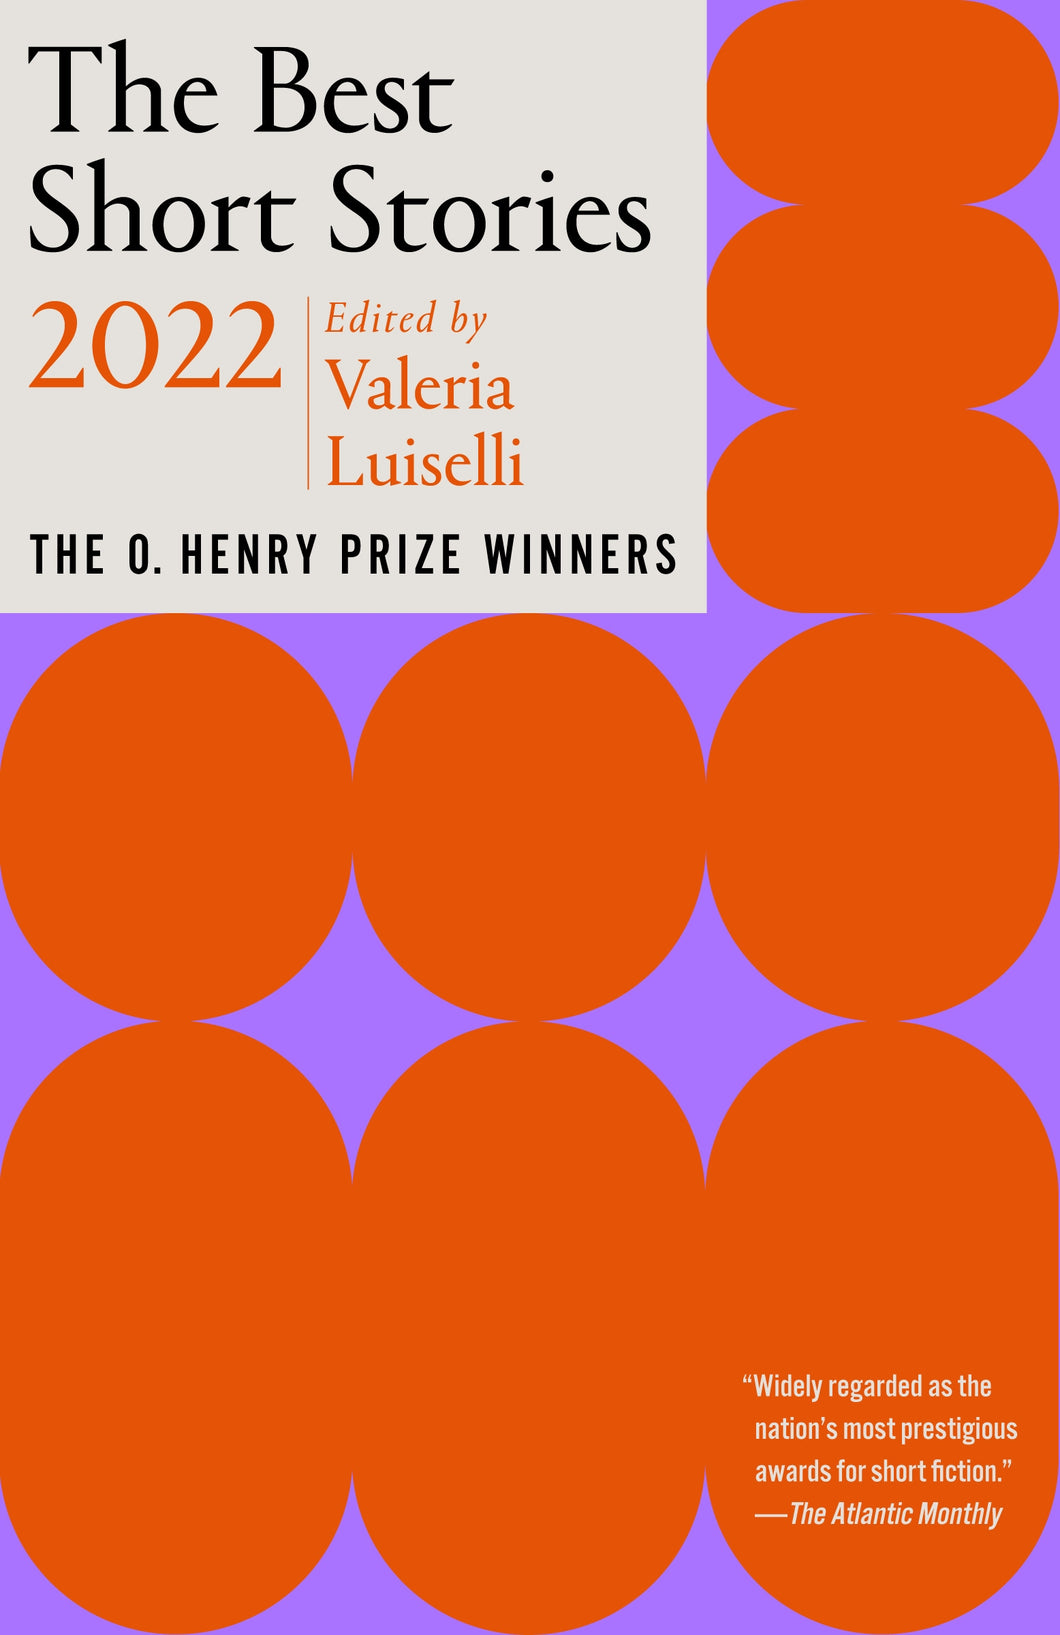 The Best Short Stories 2022 : The O. Henry Prize Winners ร้านหนังสือและสิ่งของ เป็นร้านหนังสือภาษาอังกฤษหายาก และร้านกาแฟ หรือ บุ๊คคาเฟ่ ตั้งอยู่สุขุมวิท กรุงเทพ